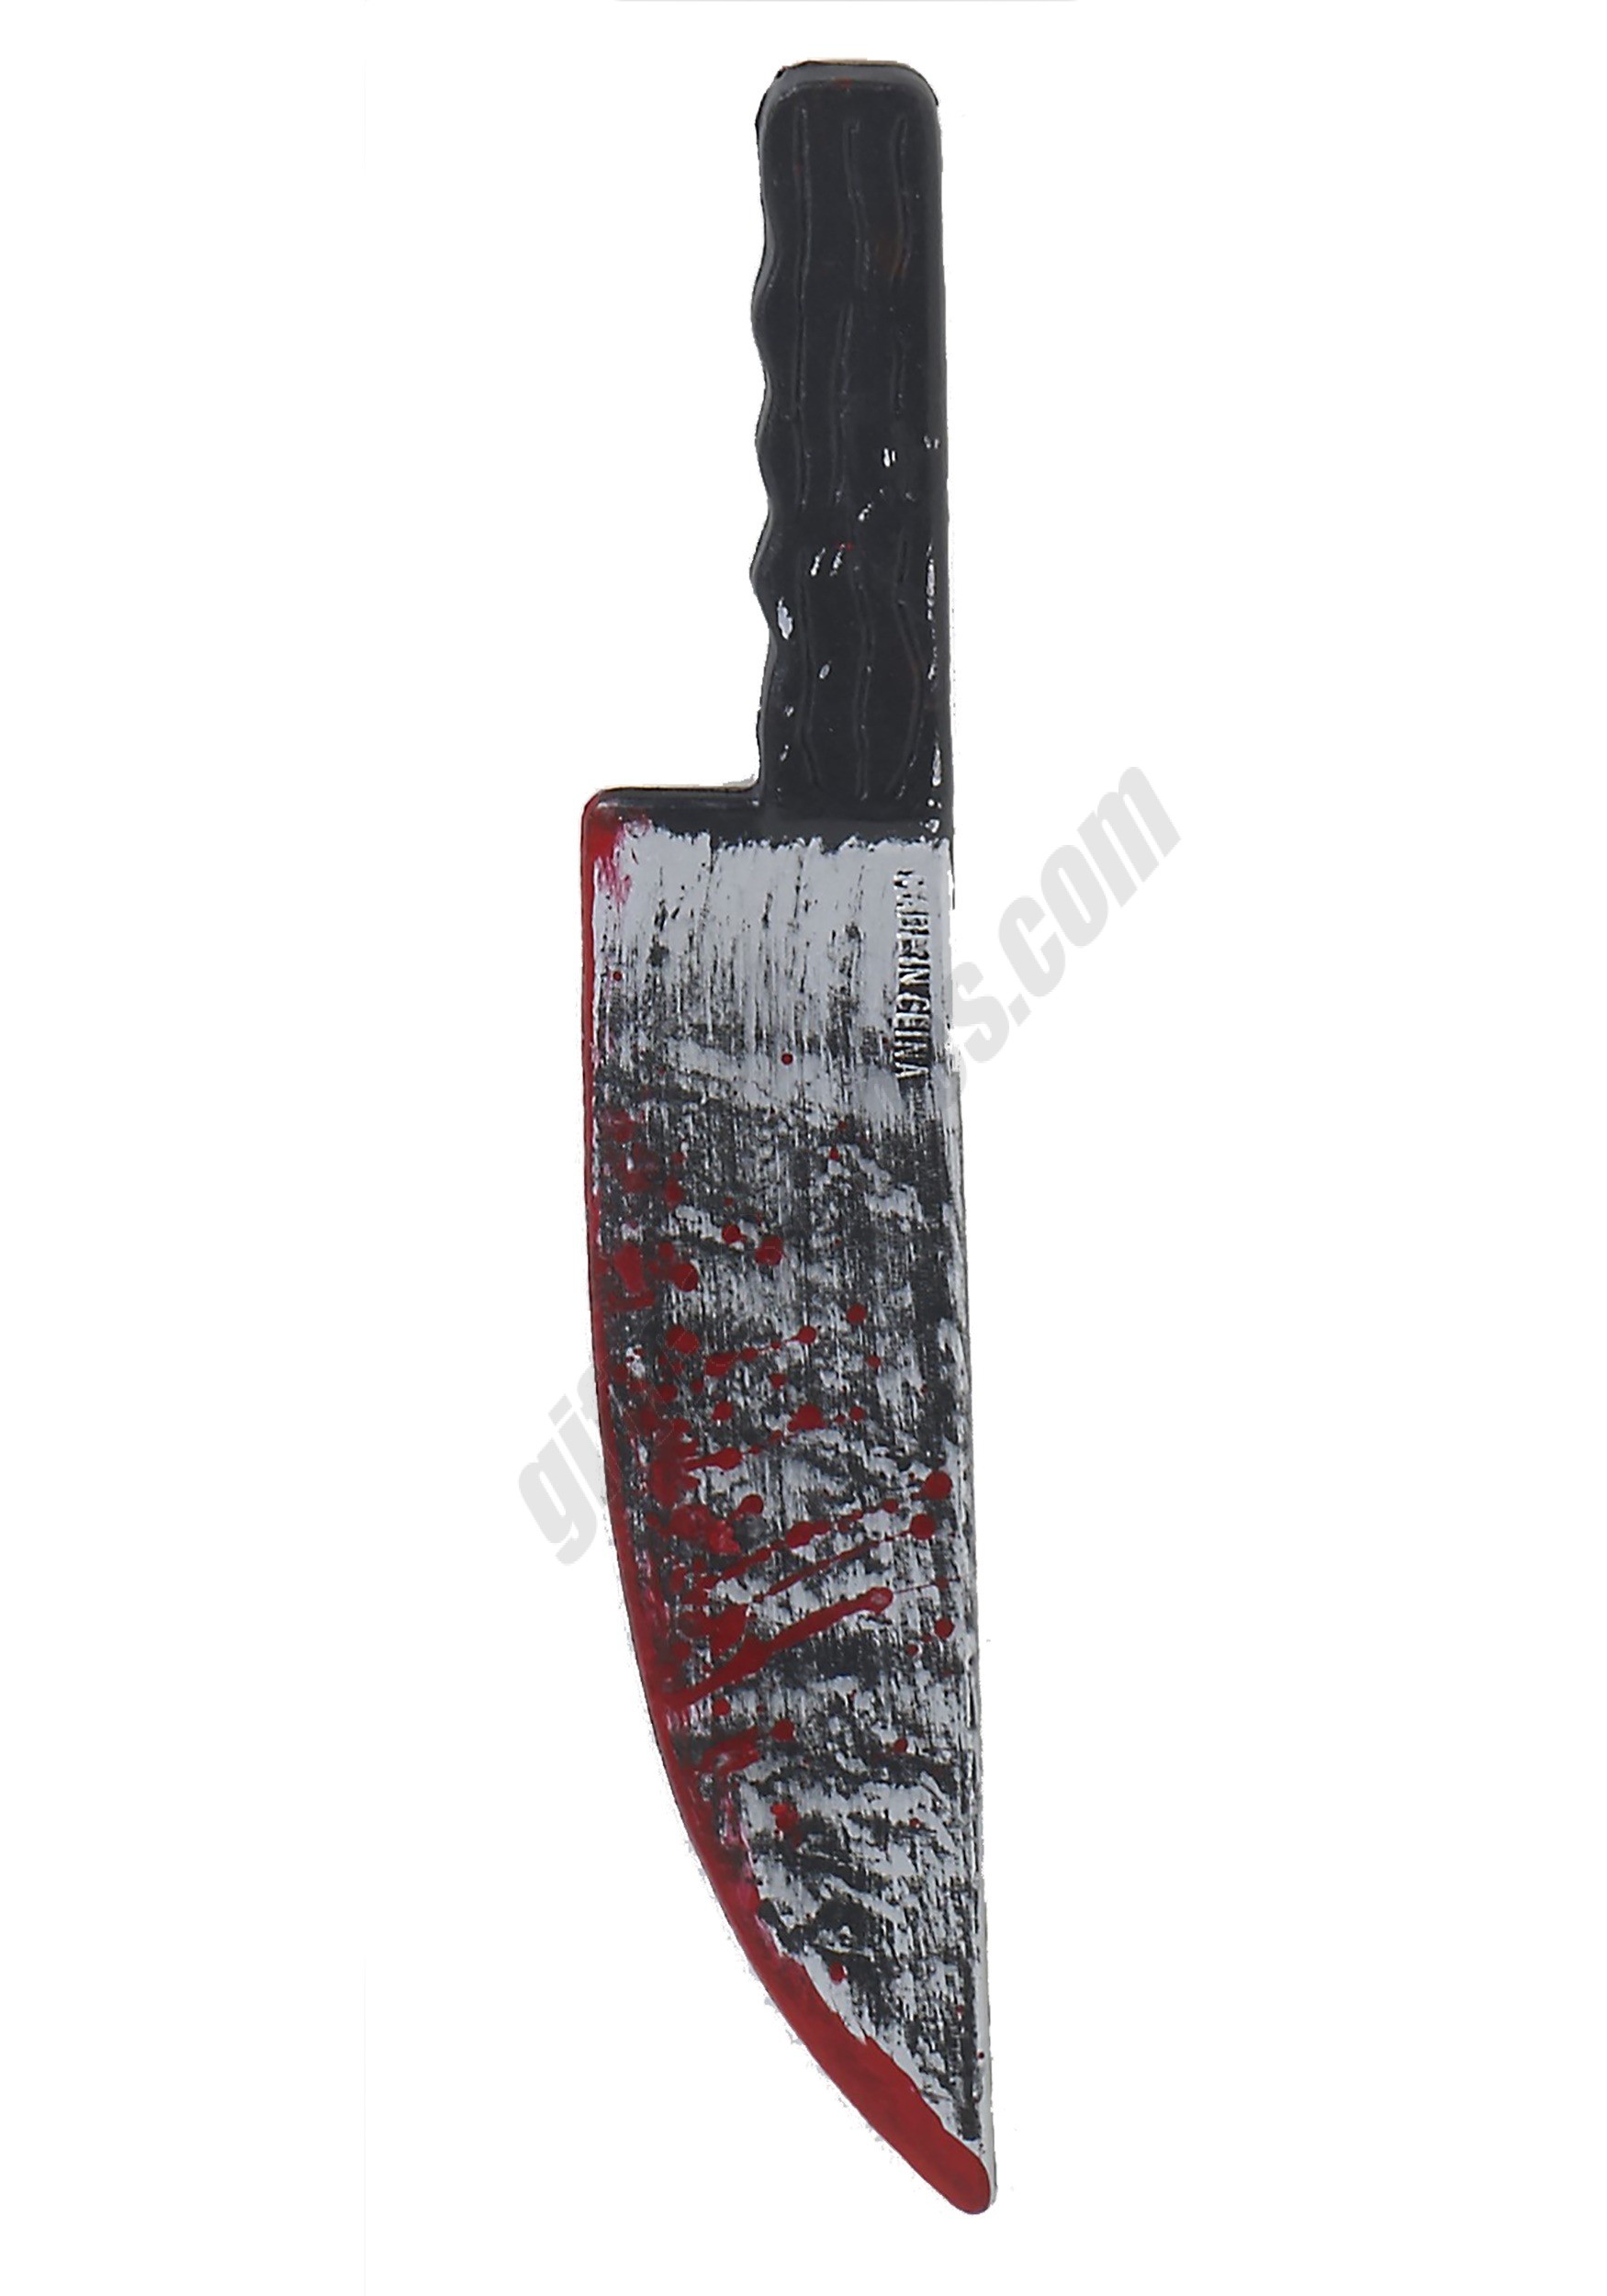 Bloody Knife Promotions - Bloody Knife Promotions